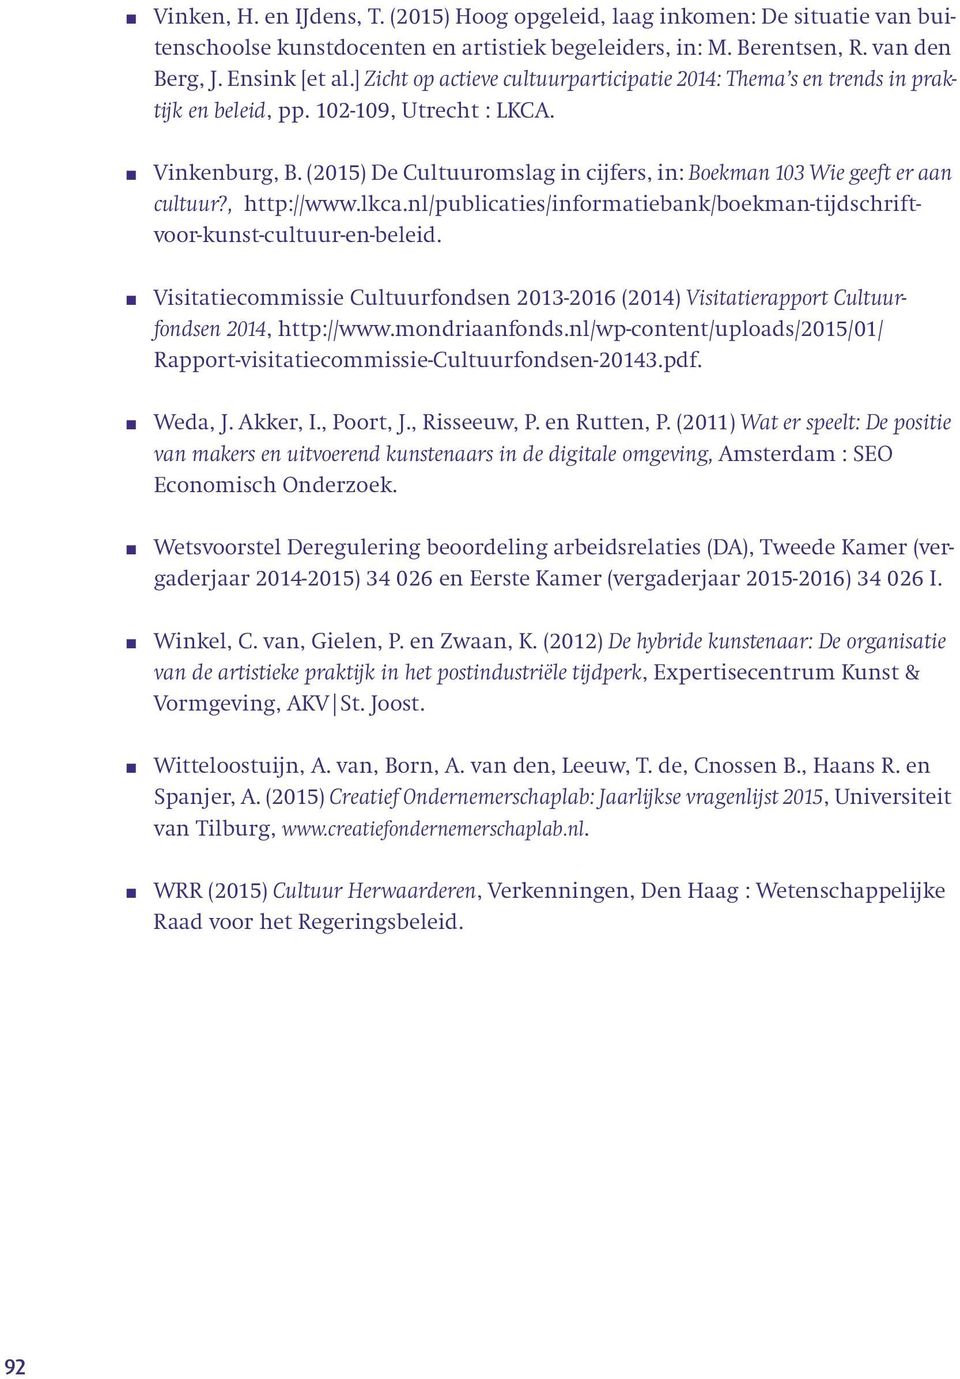 (2015) De Cultuuromslag in cijfers, in: Boekman 103 Wie geeft er aan cultuur?, http://www.lkca.nl/publicaties/informatiebank/boekman-tijdschriftvoor-kunst-cultuur-en-beleid.